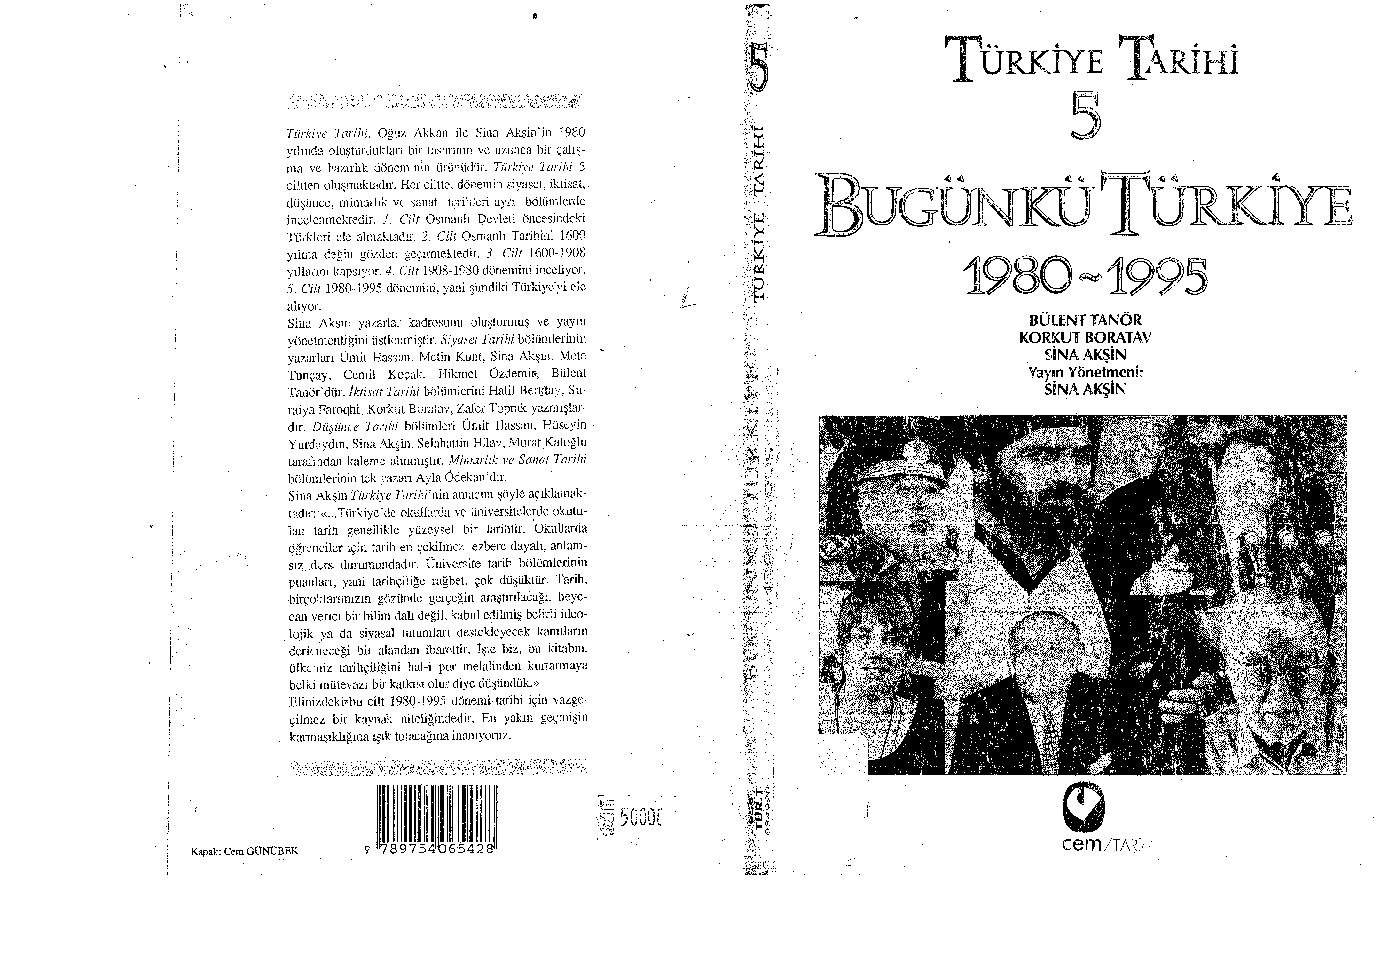 Türkiye Tarixi-5-Bugünkü Türkiye-1980-1995-Korkut Boratav-Bülend Tanor-Sina Akşin-1995-326s